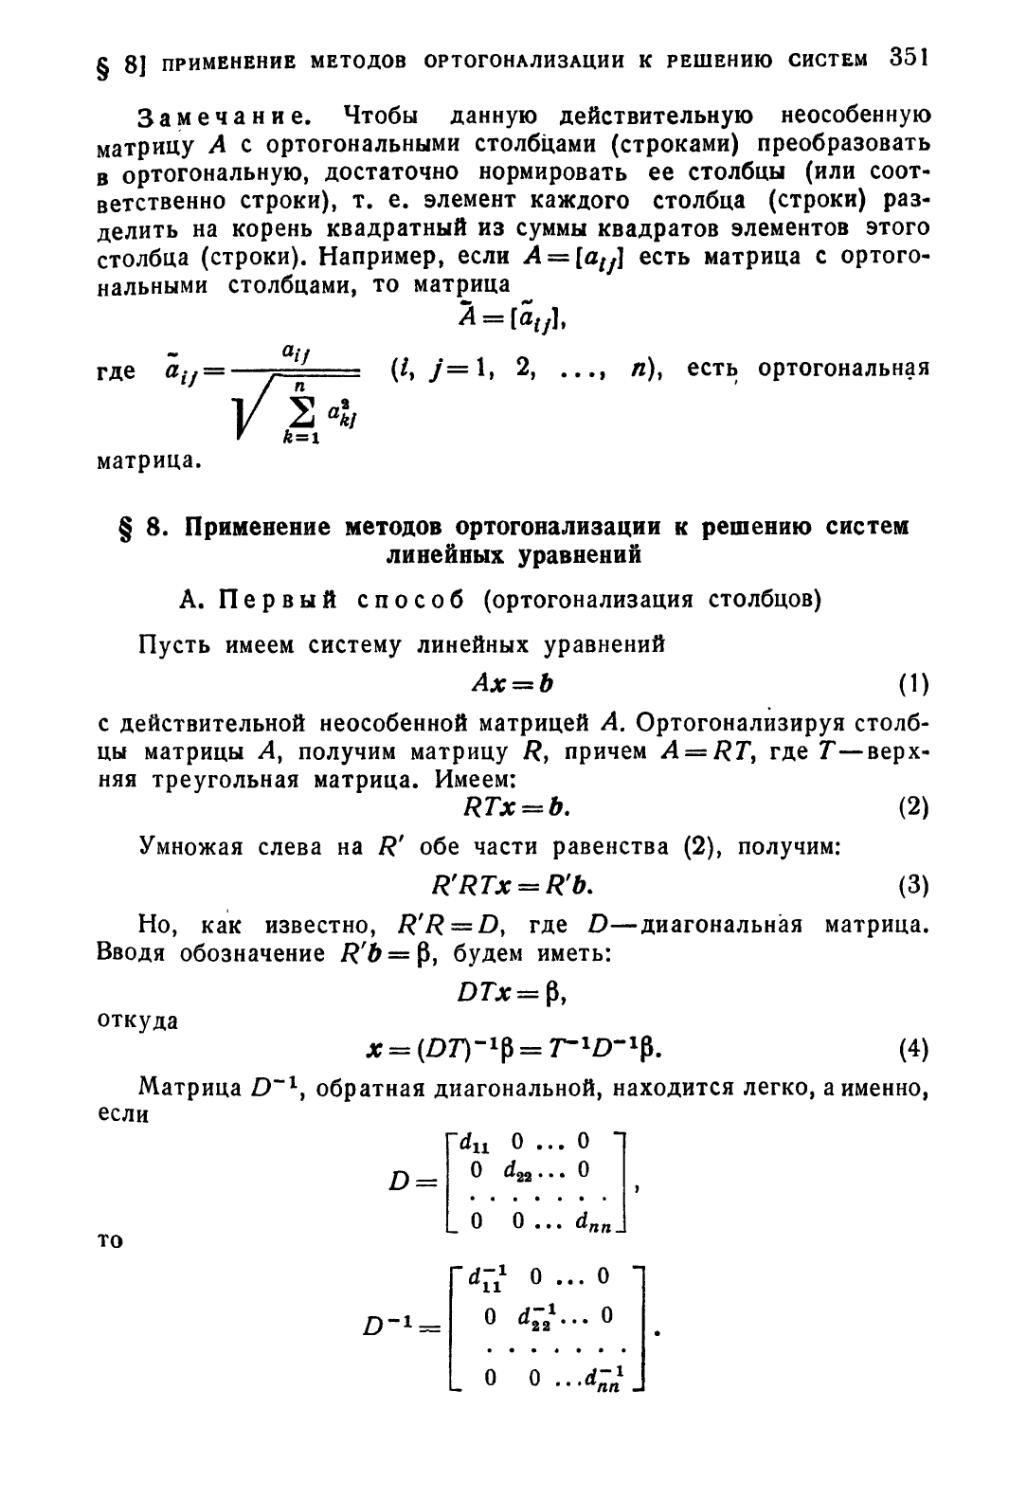 § 8. Применение методов ортогонализации к решению систем линейных уравнений